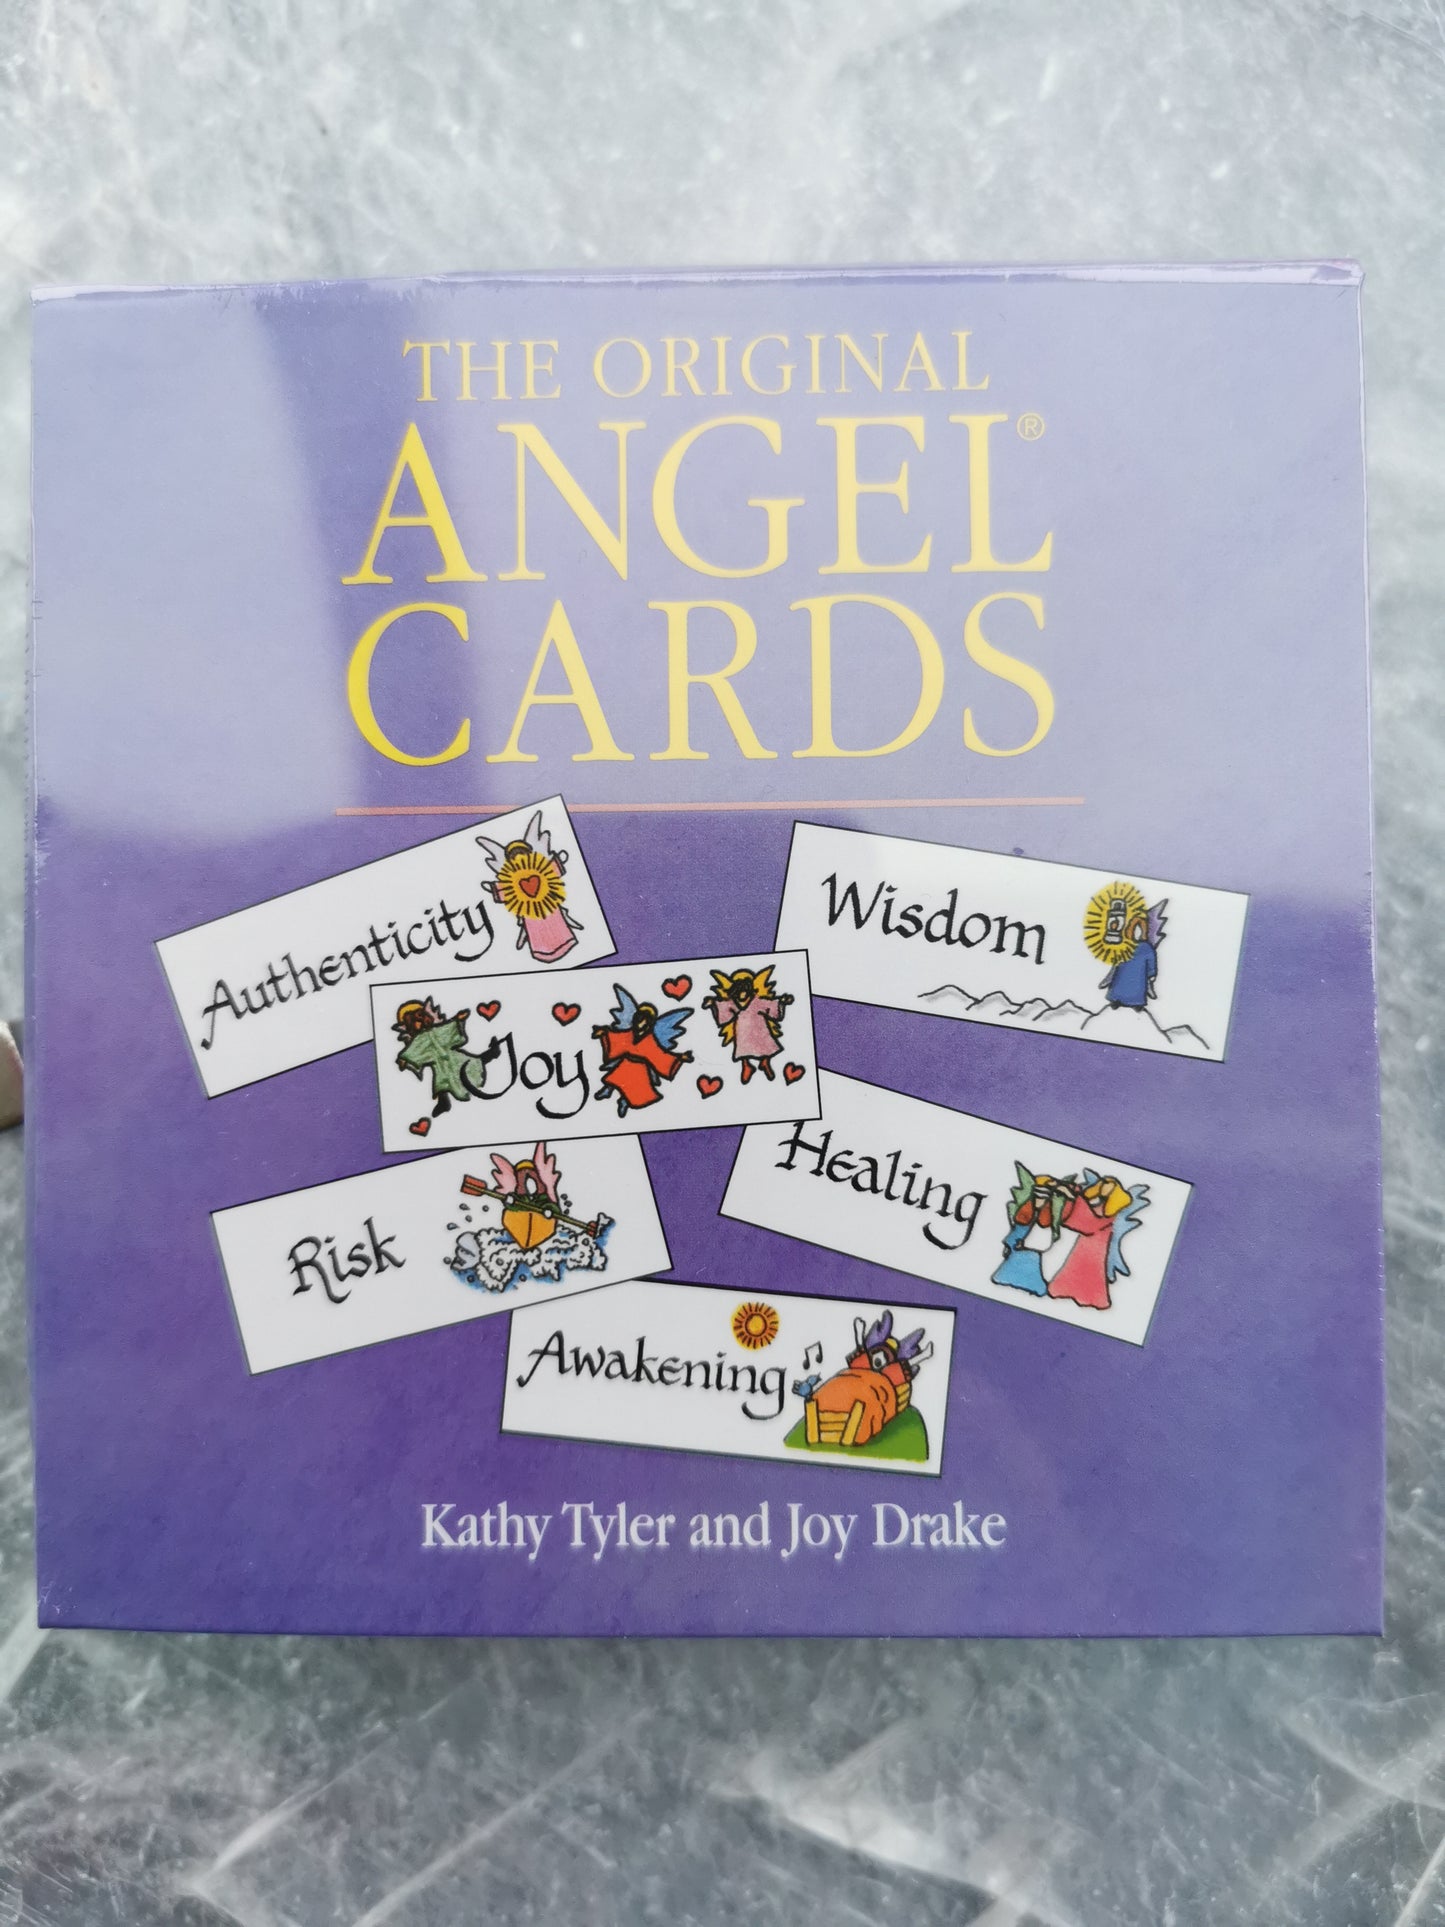 The original Angel cards